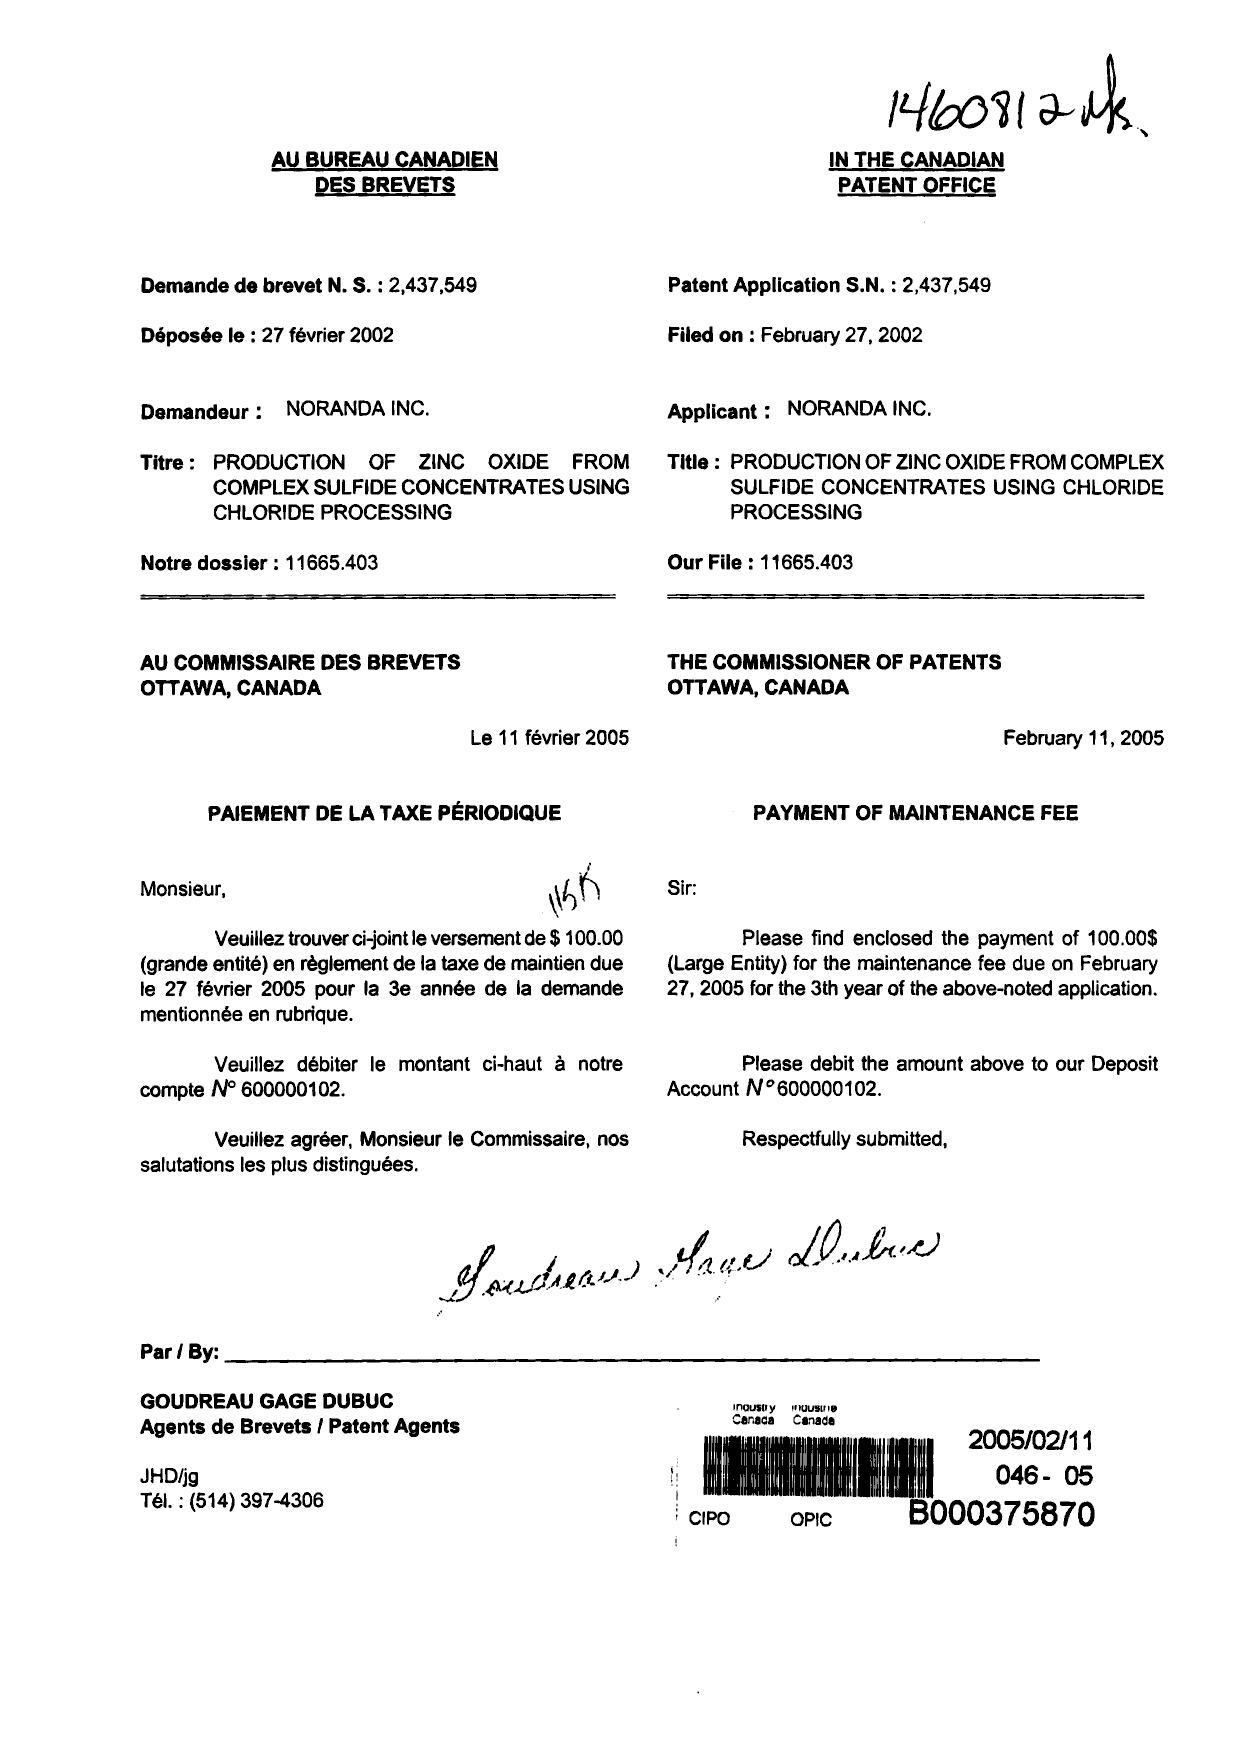 Document de brevet canadien 2437549. Taxes 20050211. Image 1 de 1